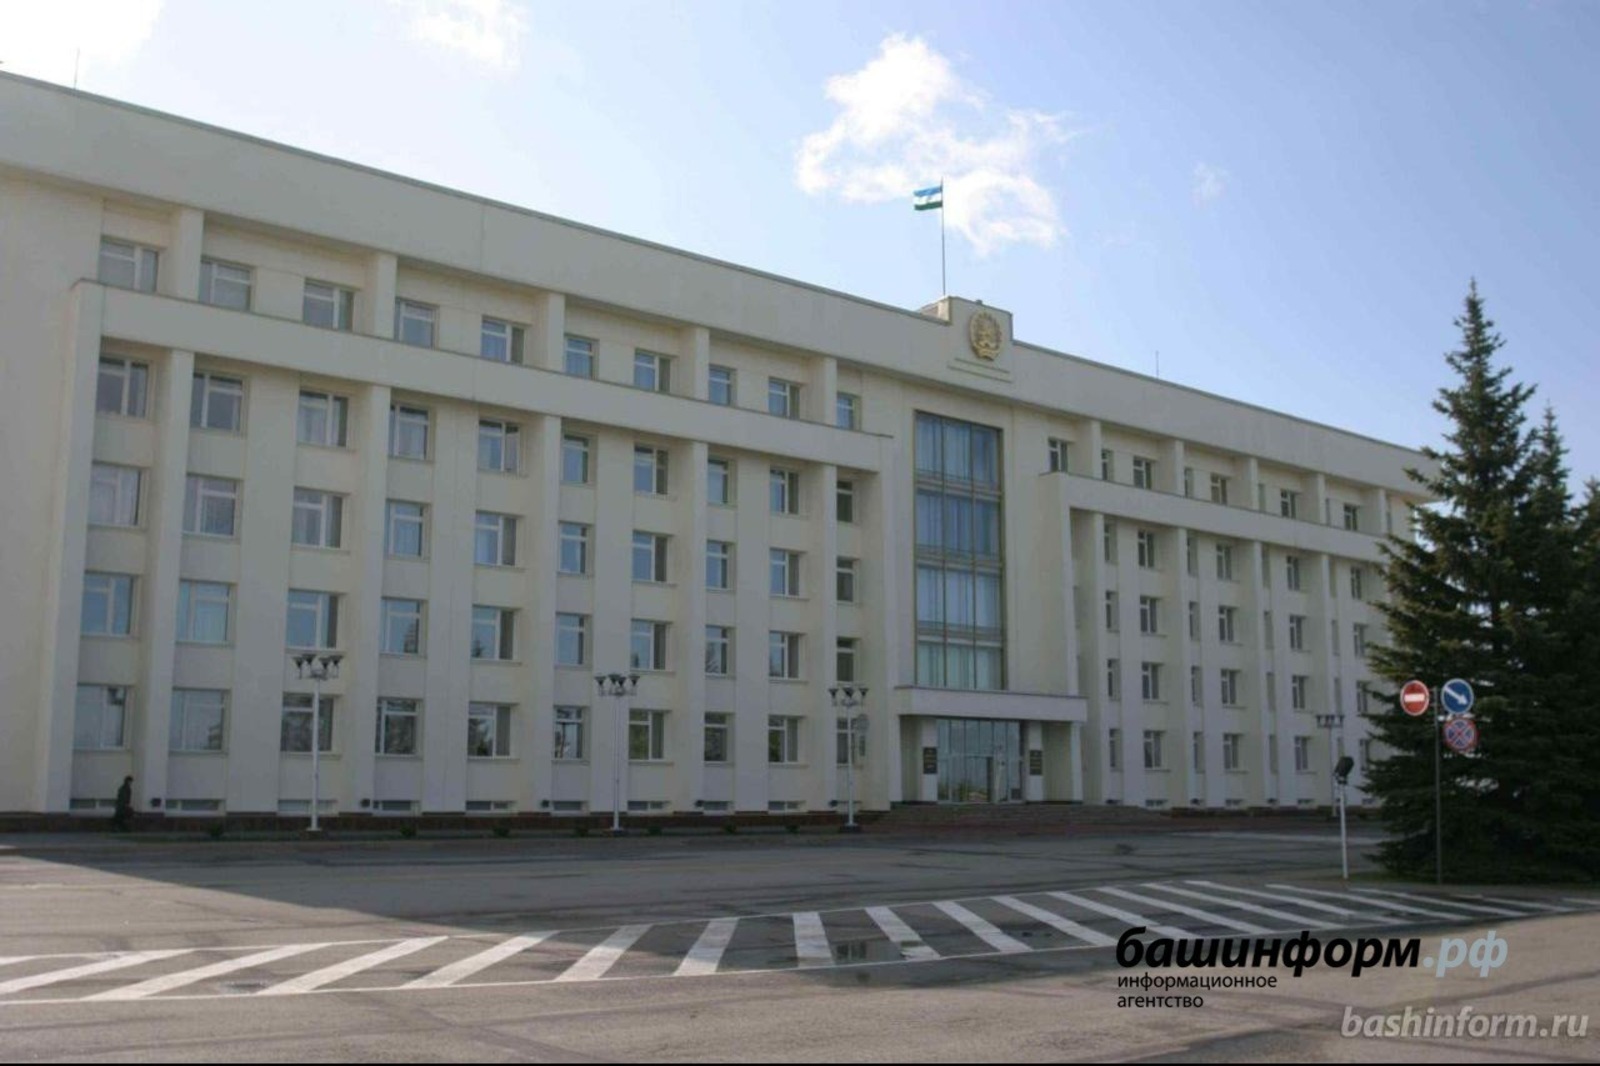 Депутаты Башкирии будут изучать использование фонограммы на концертах